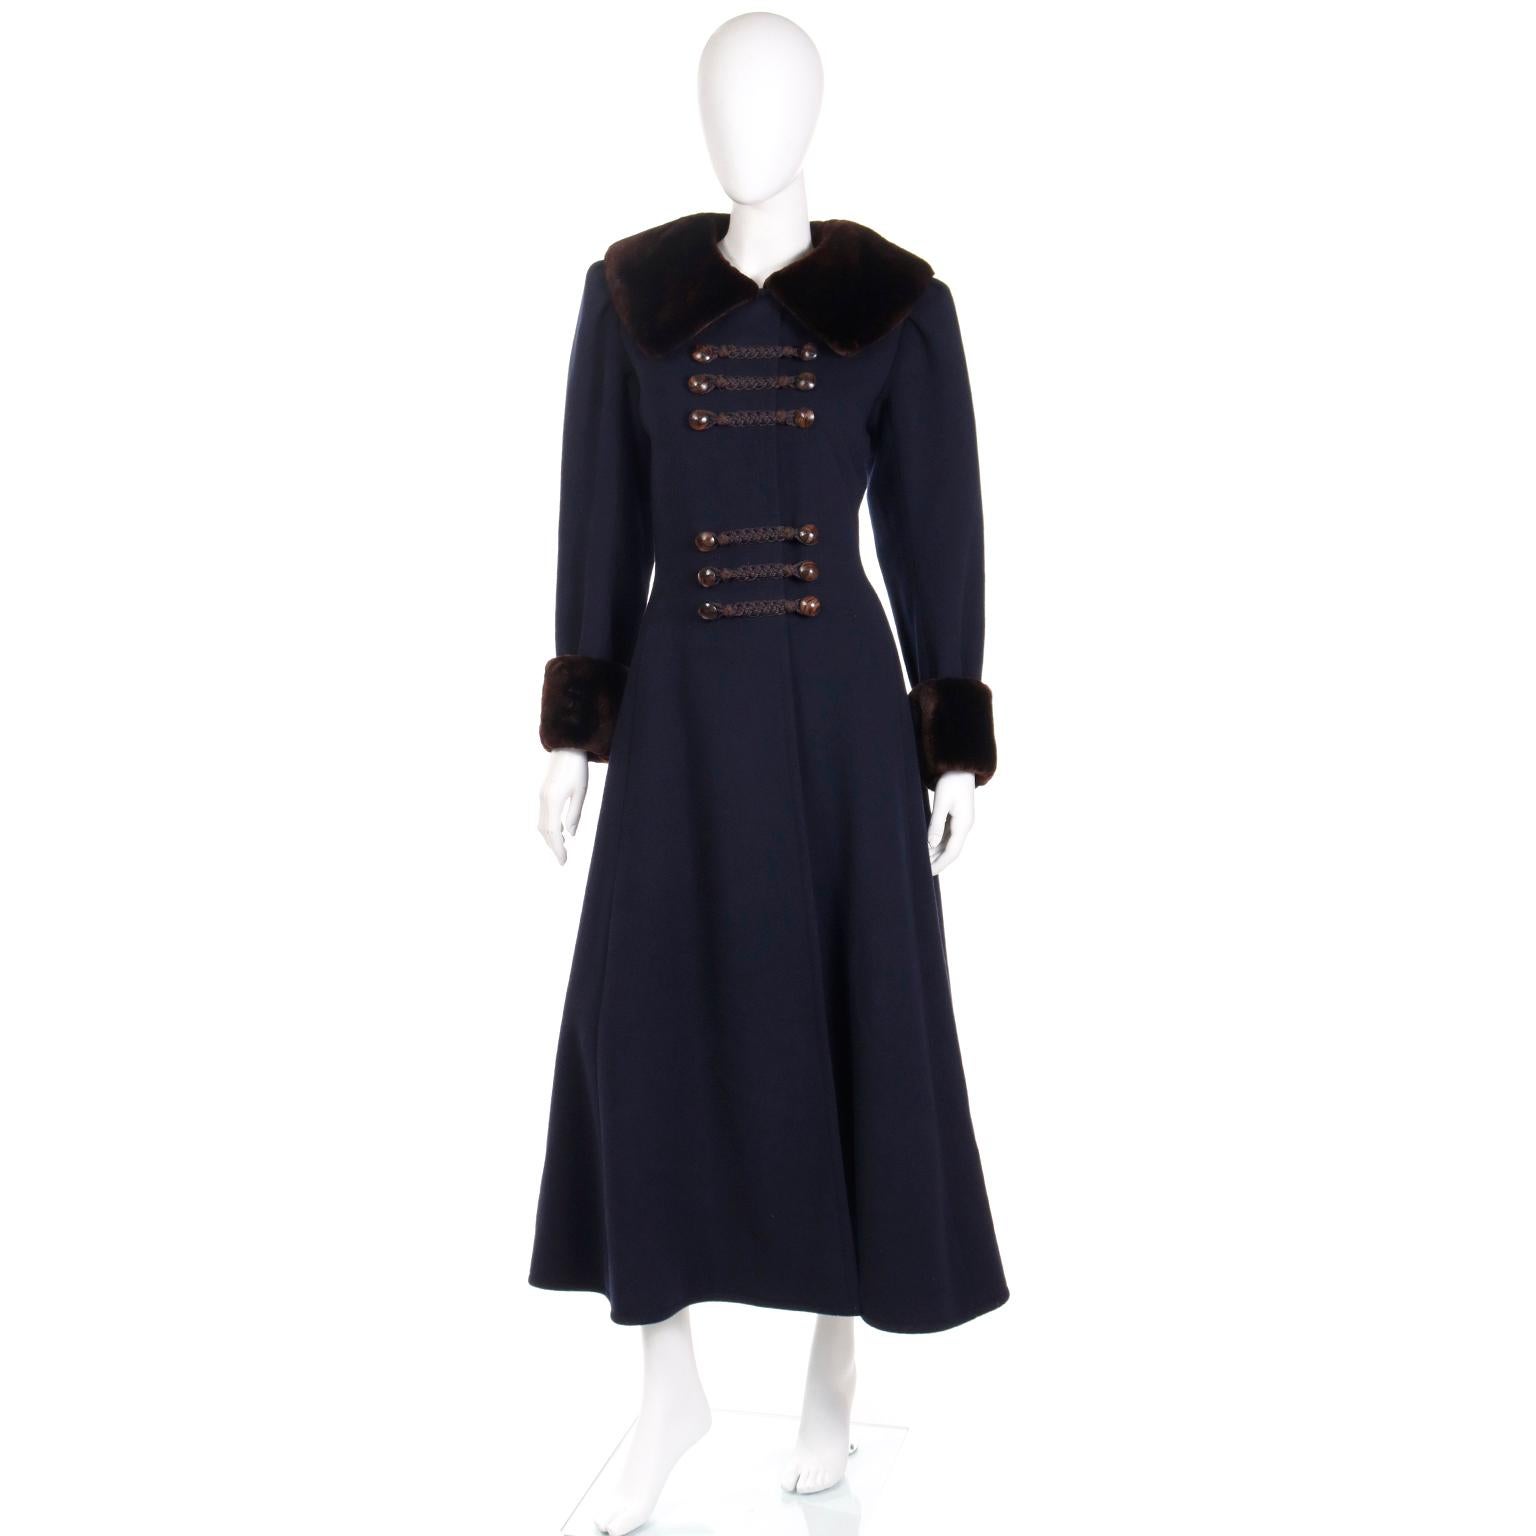 Tous ceux qui connaissent et aiment la mode vintage d'Yves Saint Laurent seront obsédés par ce manteau Haute Couture automne/hiver 1976 / 77 en laine bleu marine de style cosaque avec une garniture en vison tondus brun chocolat. Ce manteau